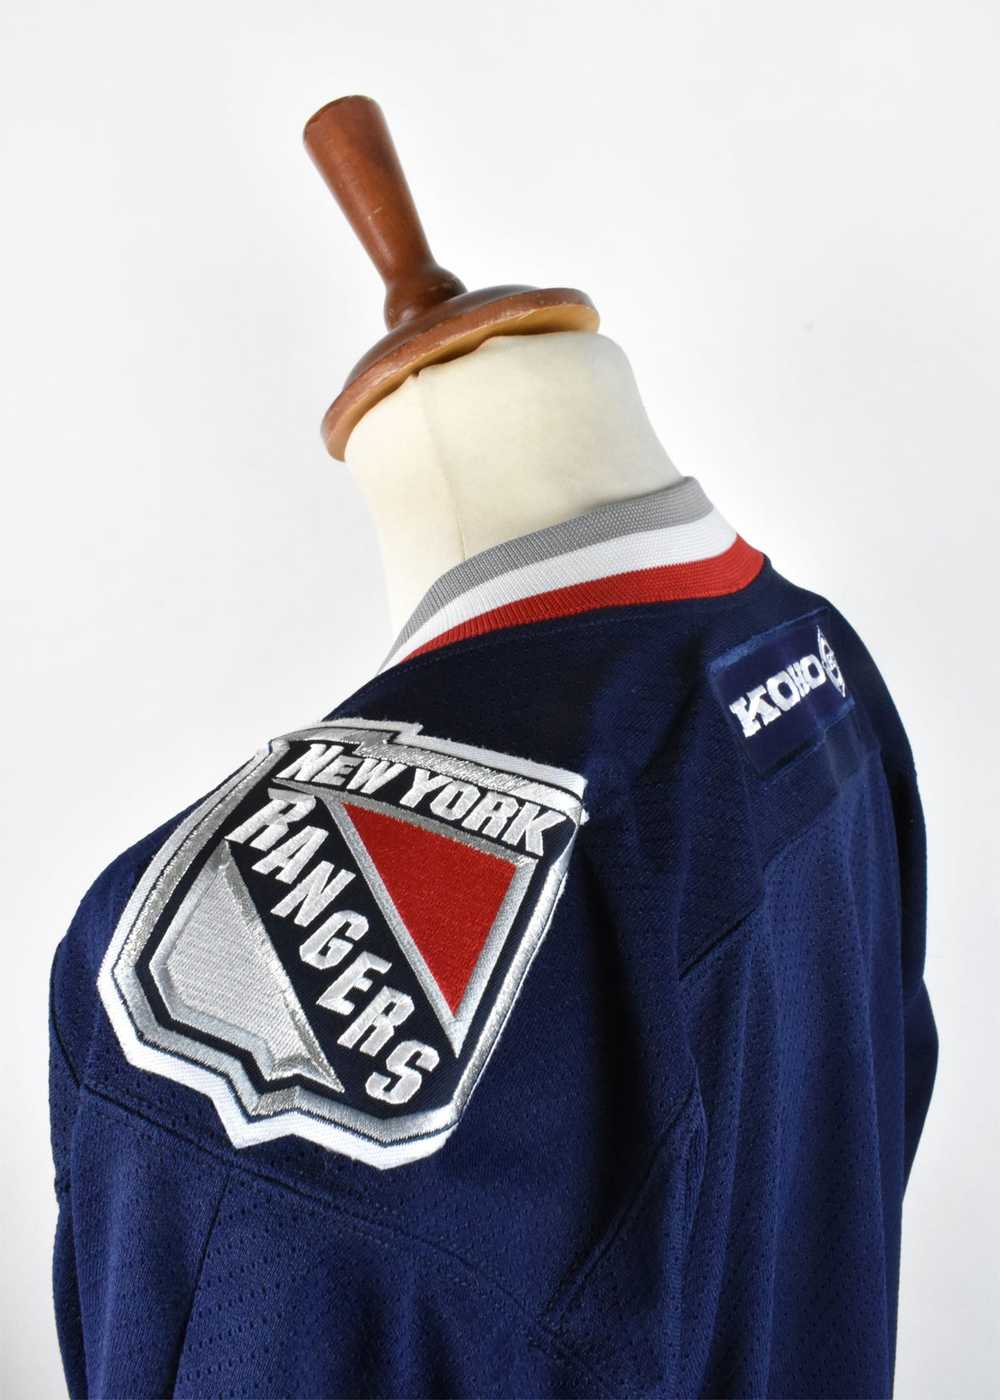 New York Rangers Koho Hockey Jersey, Made in Cana… - image 6